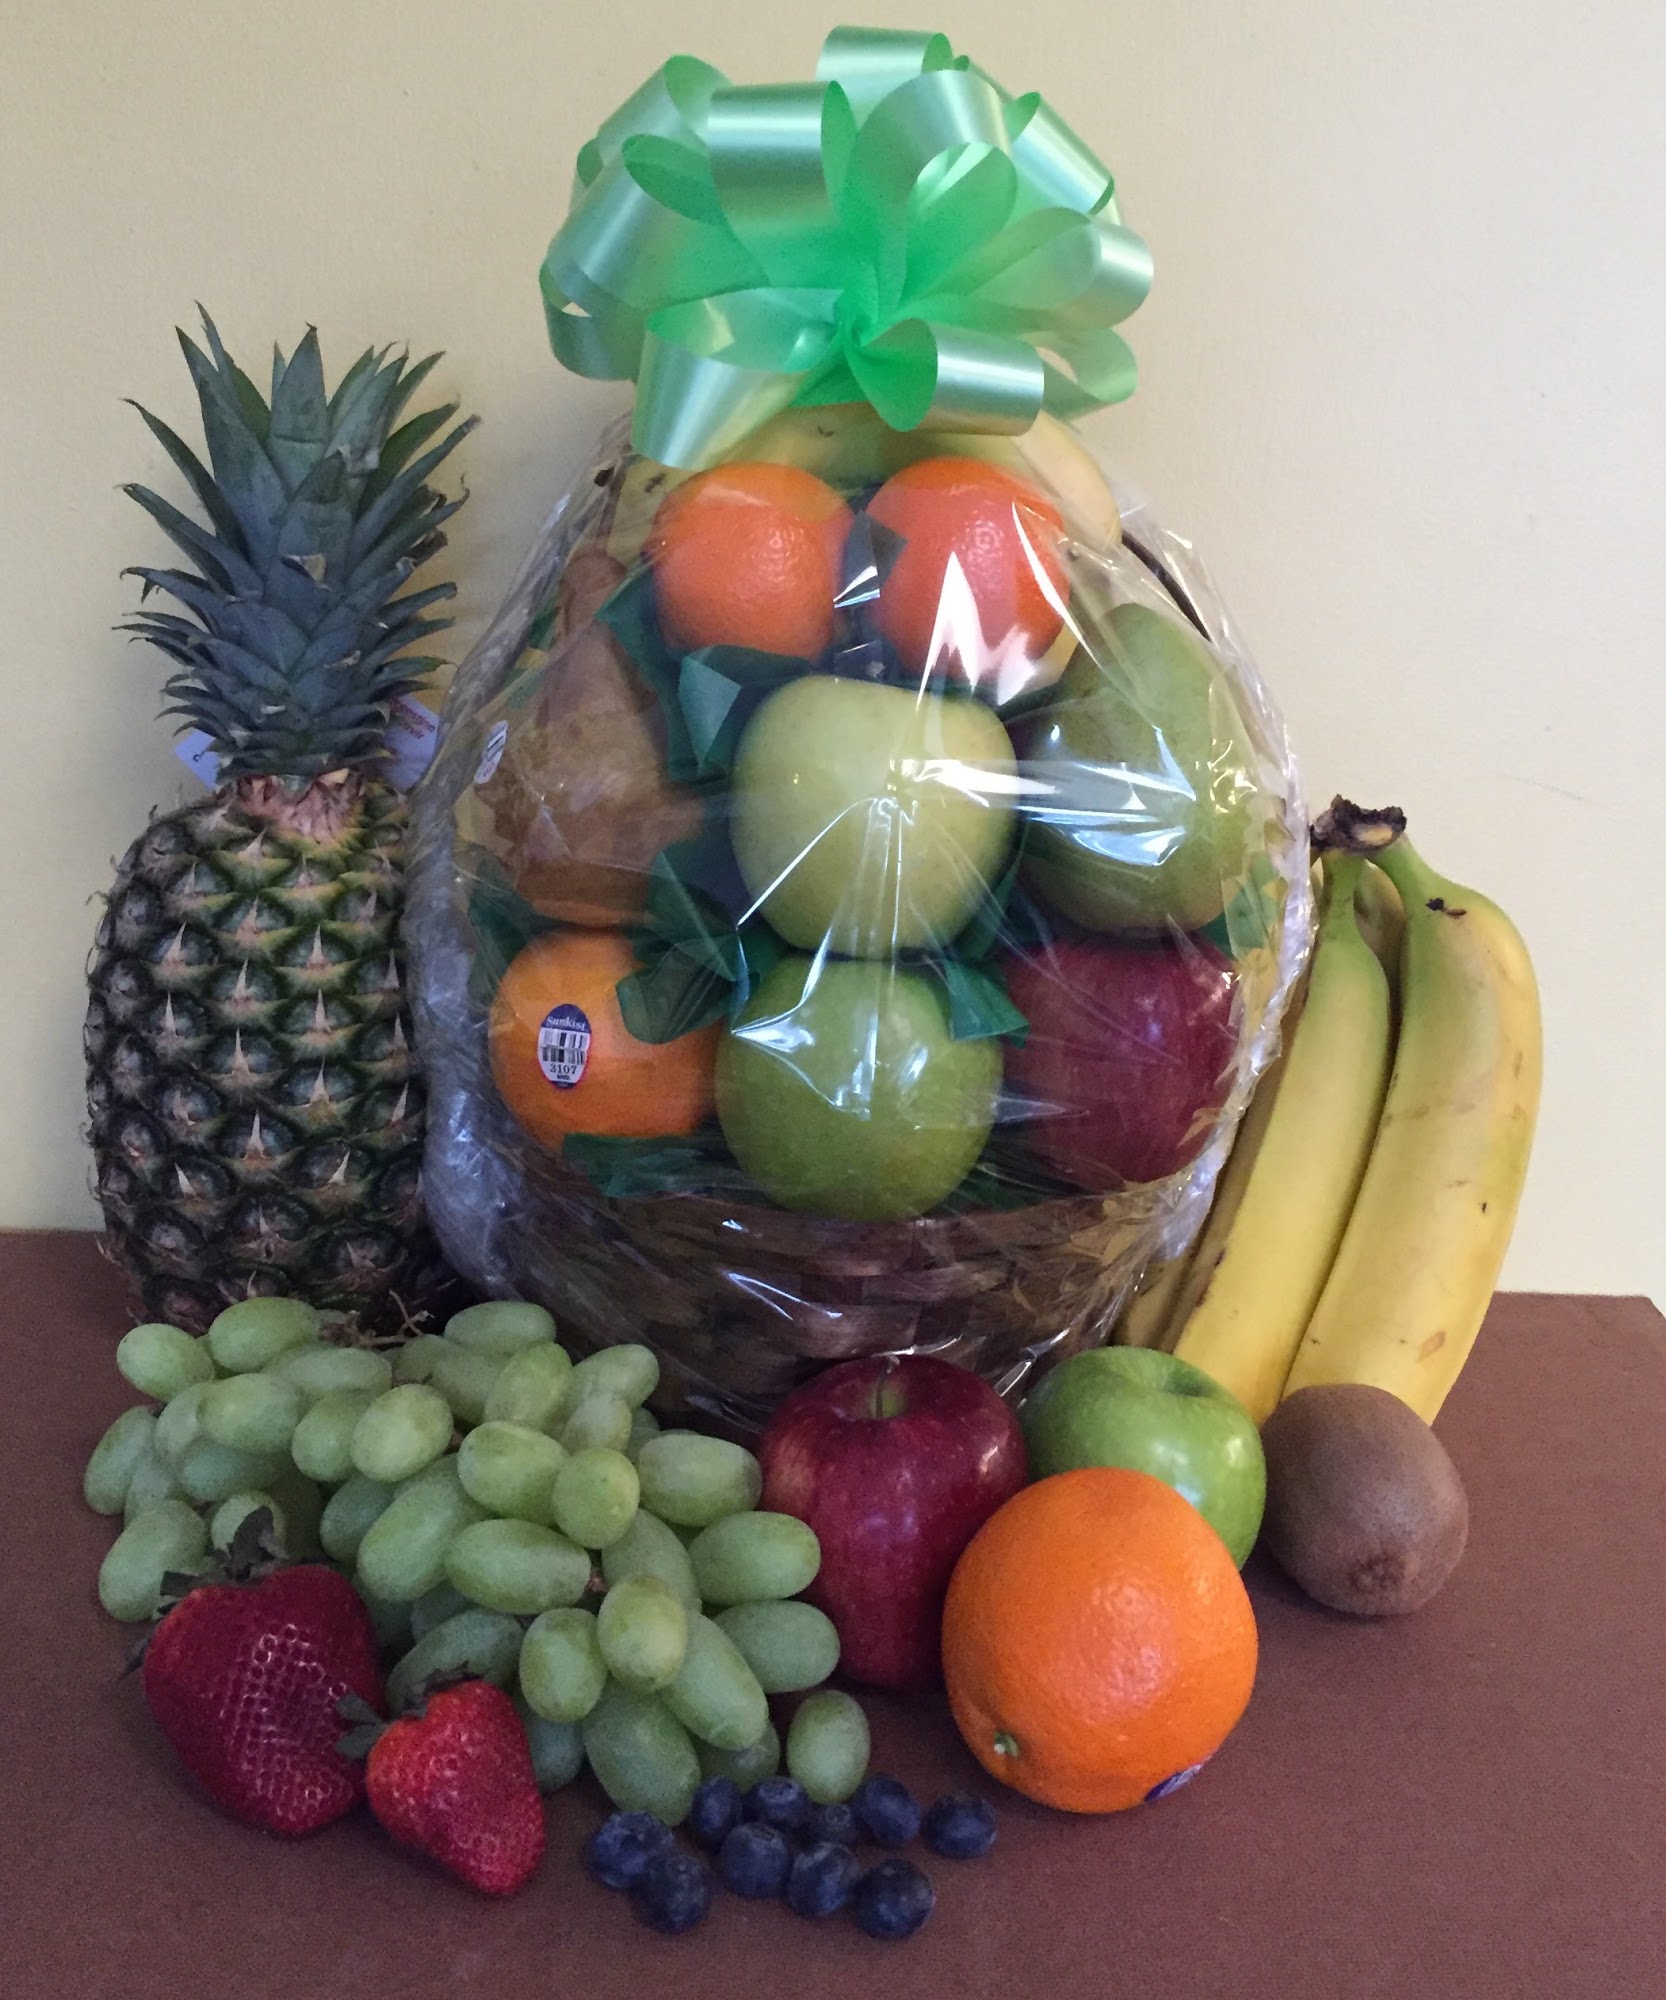 Commercial Fruit & Garden Outlet / Harvest Moon Fruit Baskets